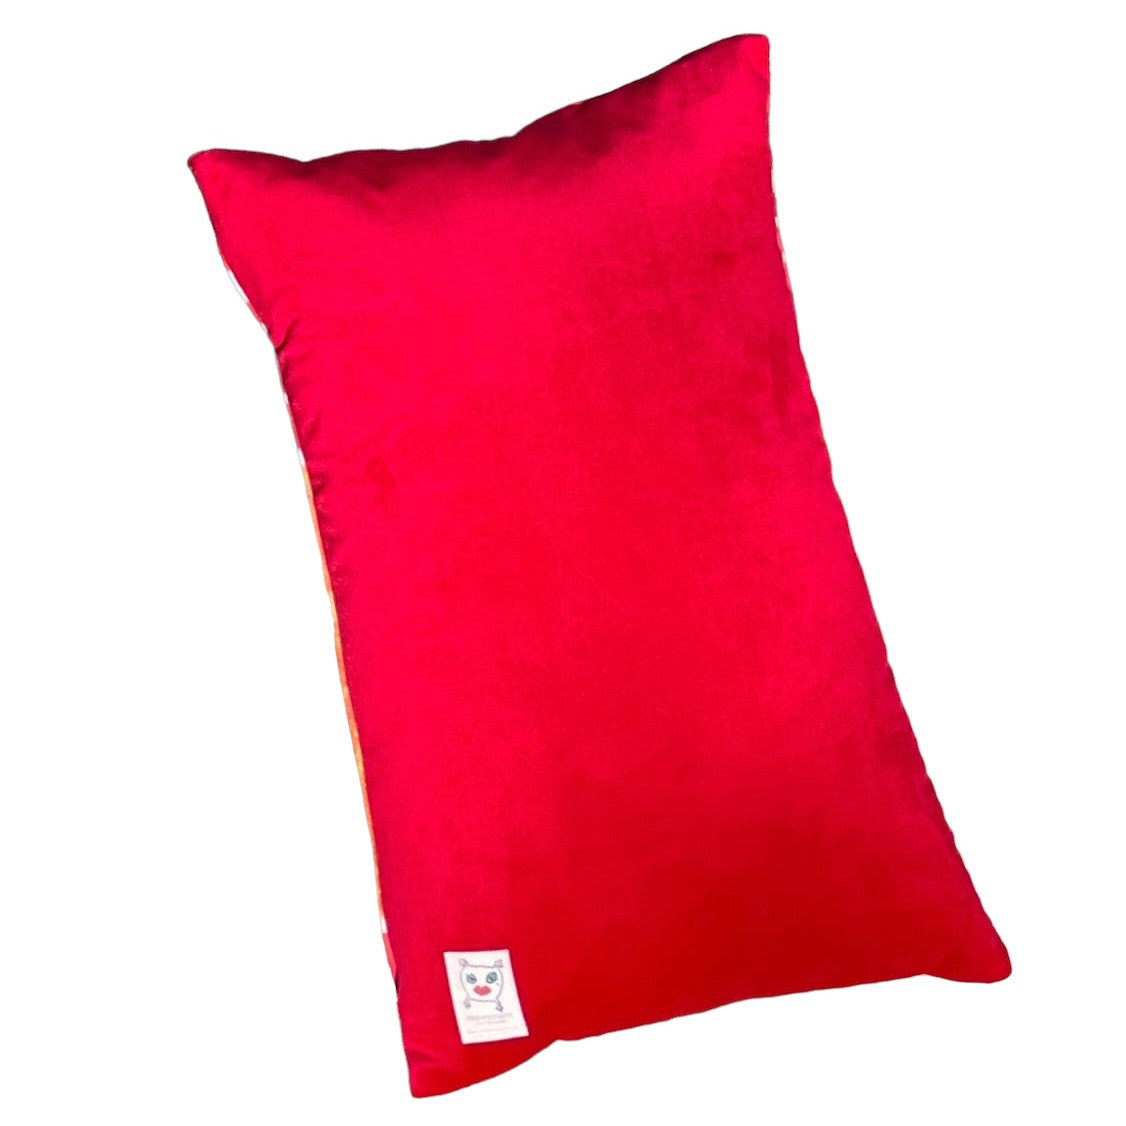 red velvet rectangular pillow